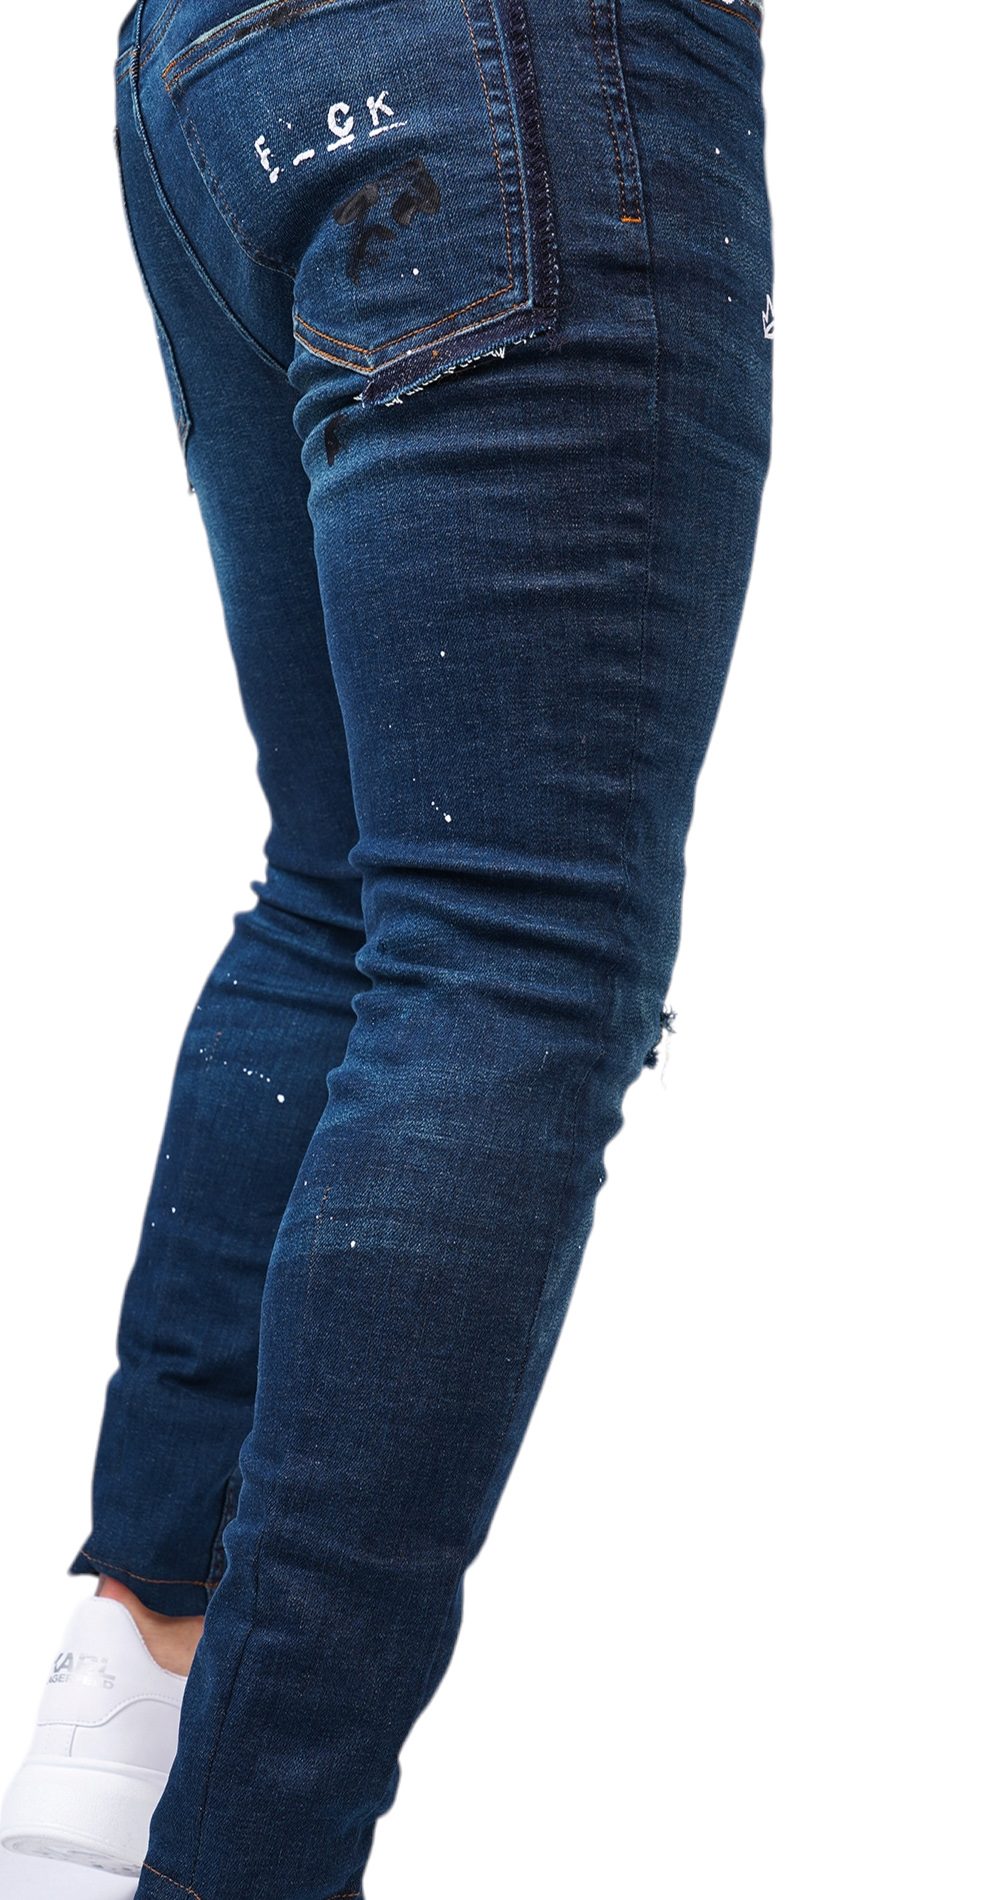 Jeans stretch, cu tocituri si elemente handmade MJL6120